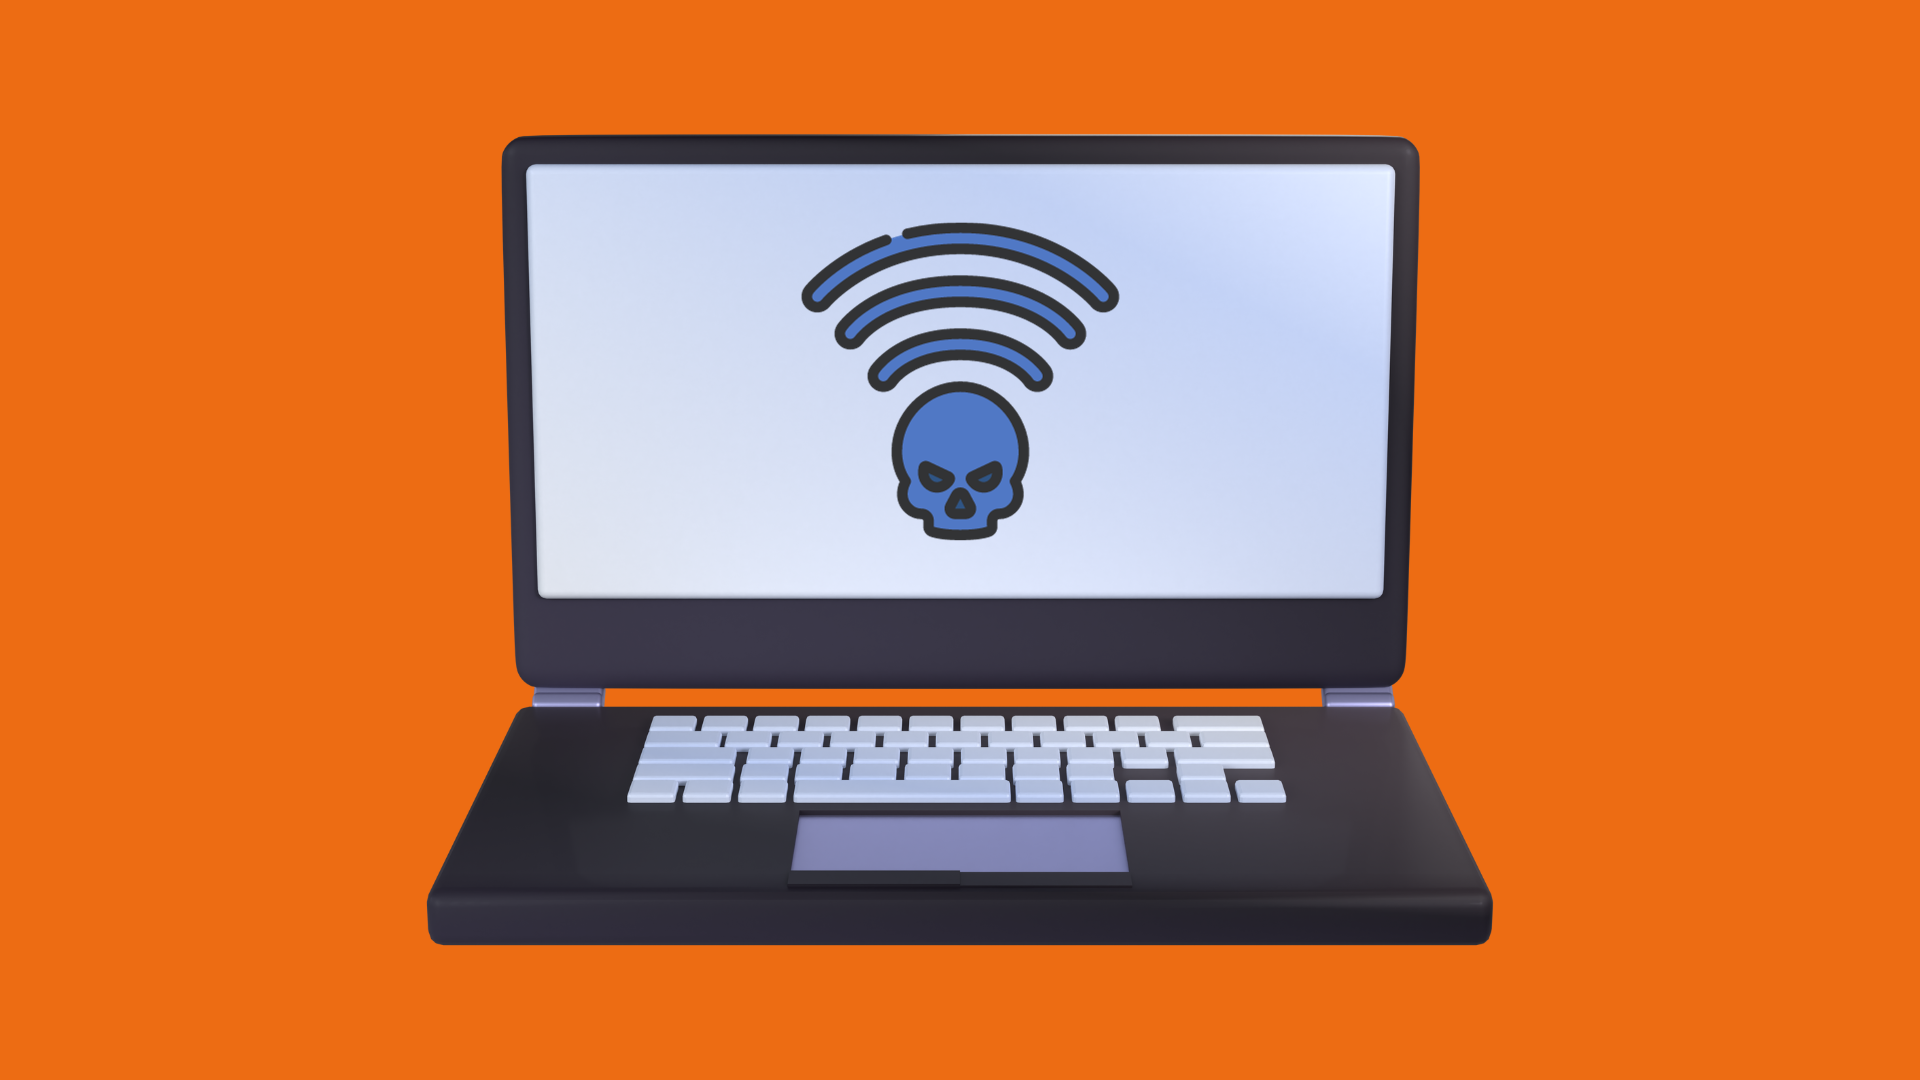 Detecta si tu Red WiFi ha sido Hackeada: 5 Señales de Alerta